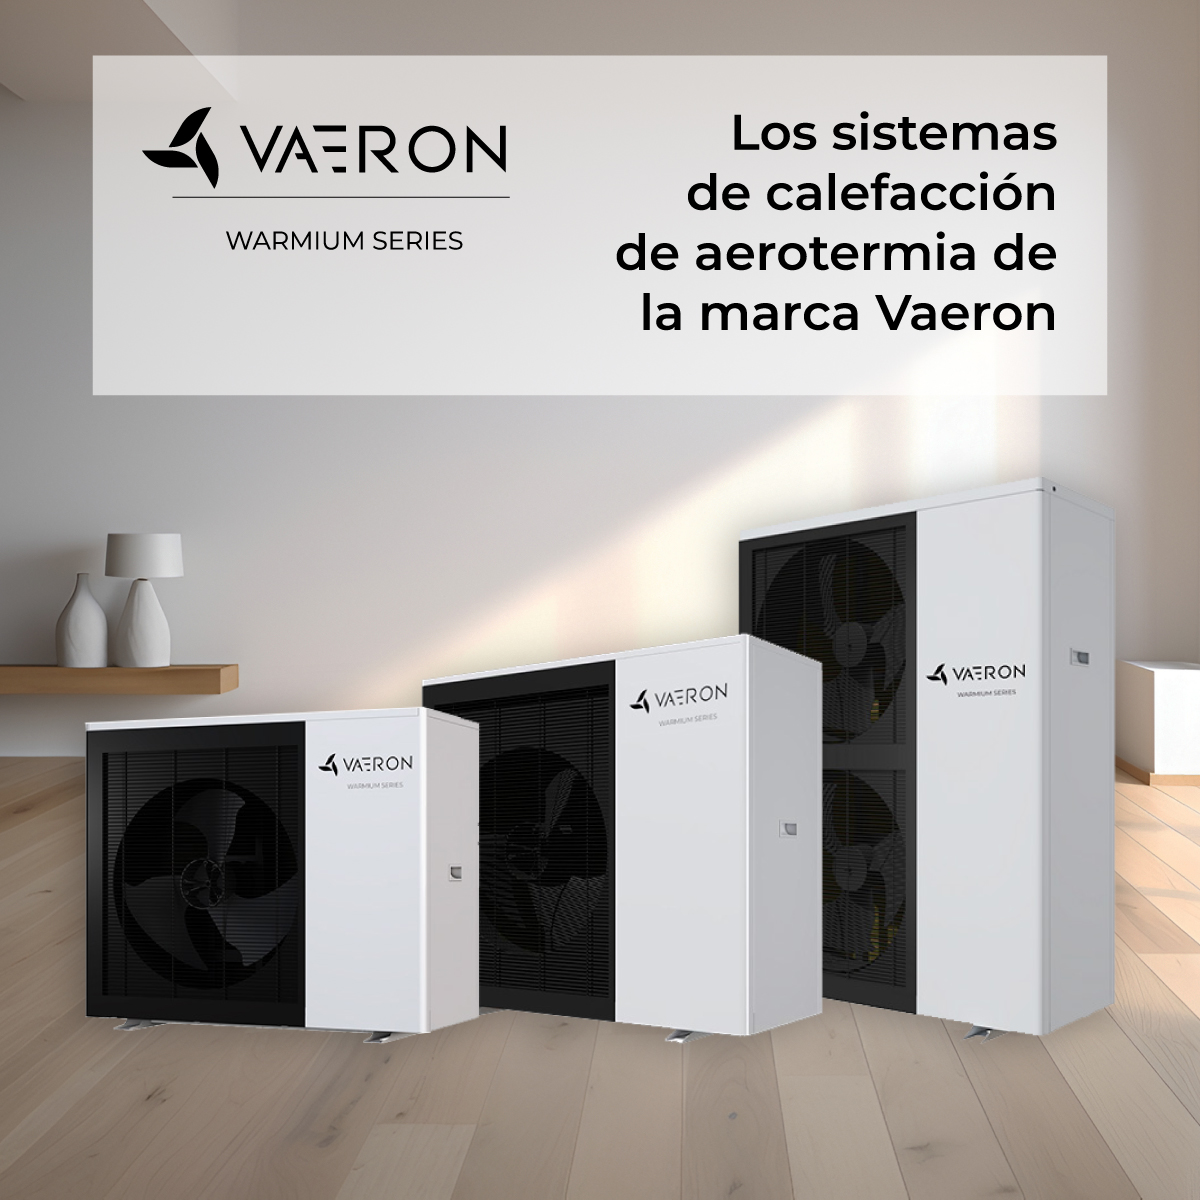 Los sistemas de calefacción de aerotermia de la marca Vaeron pueden reducir tu factura en más del 25% en comparación con el gas.